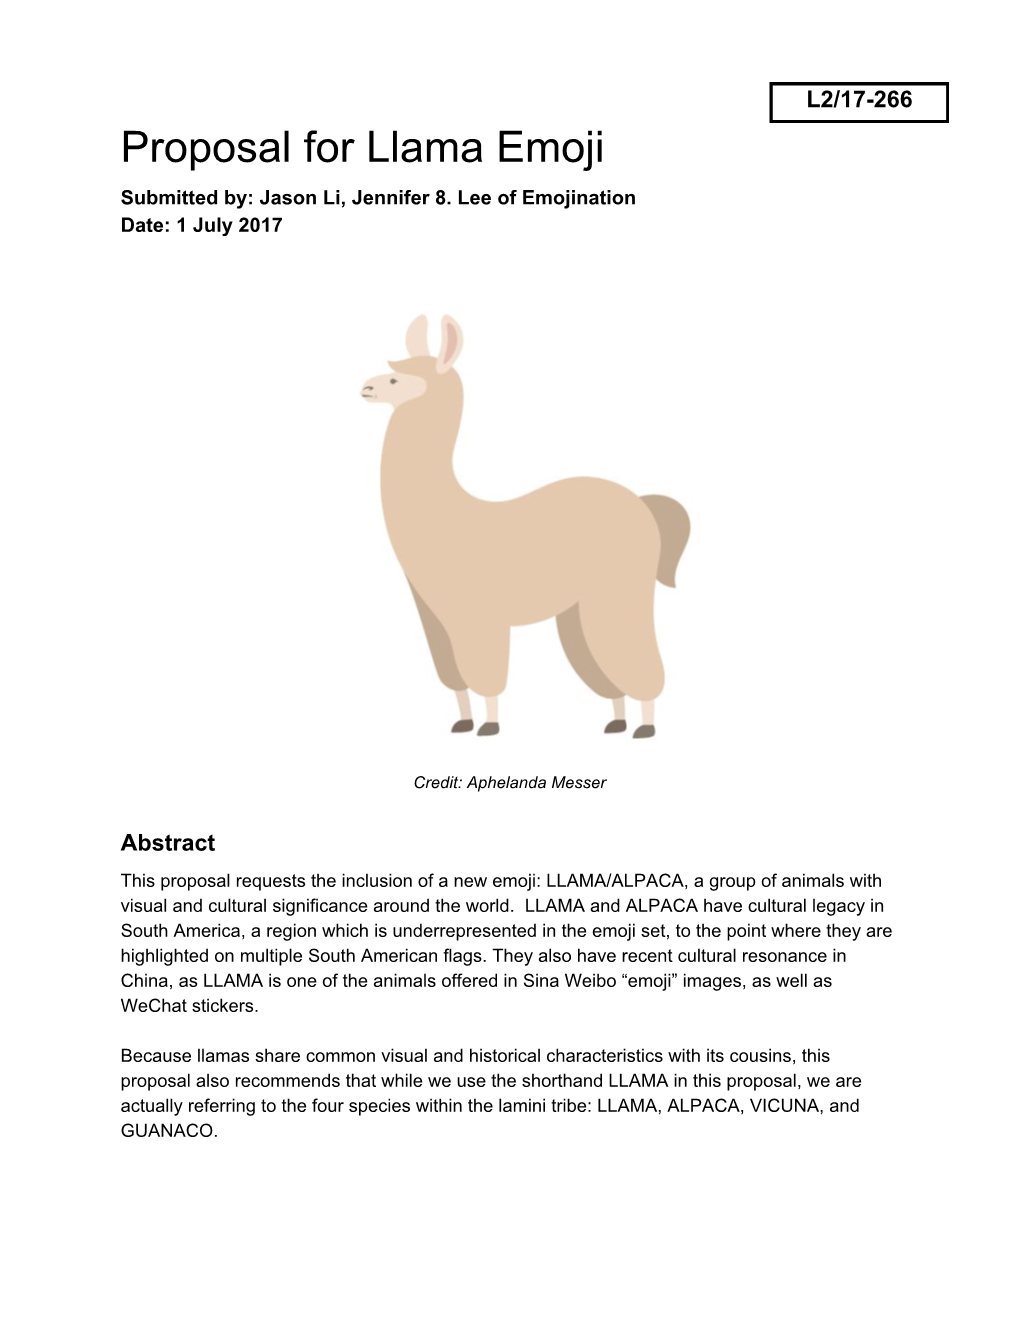 Proposal for Llama Emoji Submitted By: Jason Li, Jennifer 8